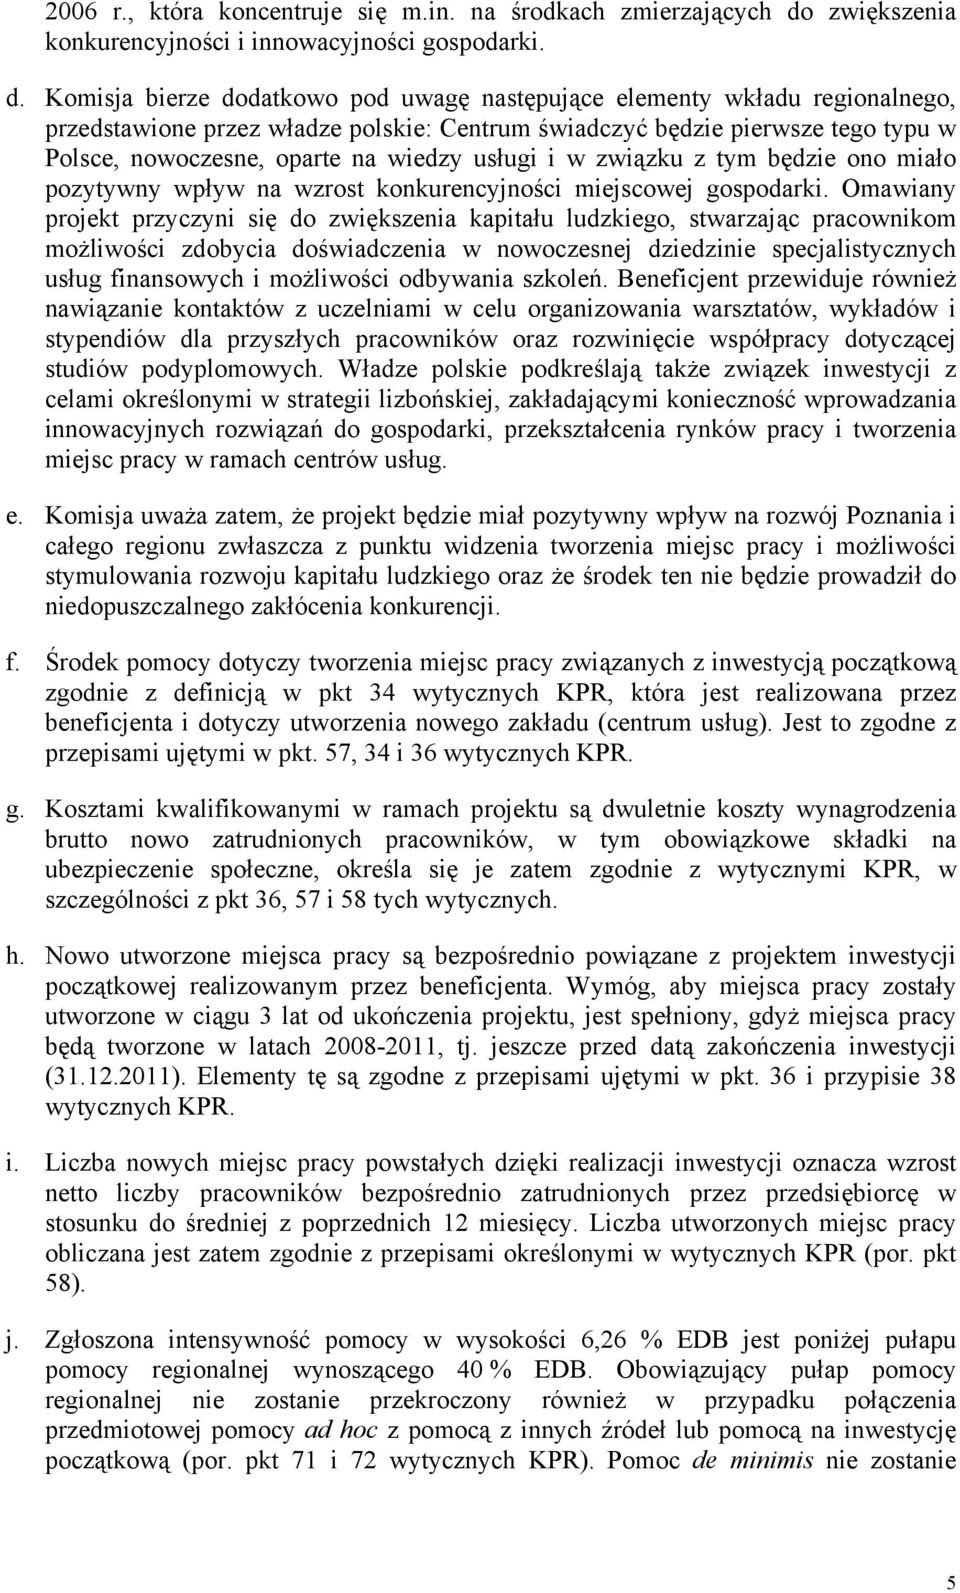 Komisja bierze dodatkowo pod uwagę następujące elementy wkładu regionalnego, przedstawione przez władze polskie: Centrum świadczyć będzie pierwsze tego typu w Polsce, nowoczesne, oparte na wiedzy